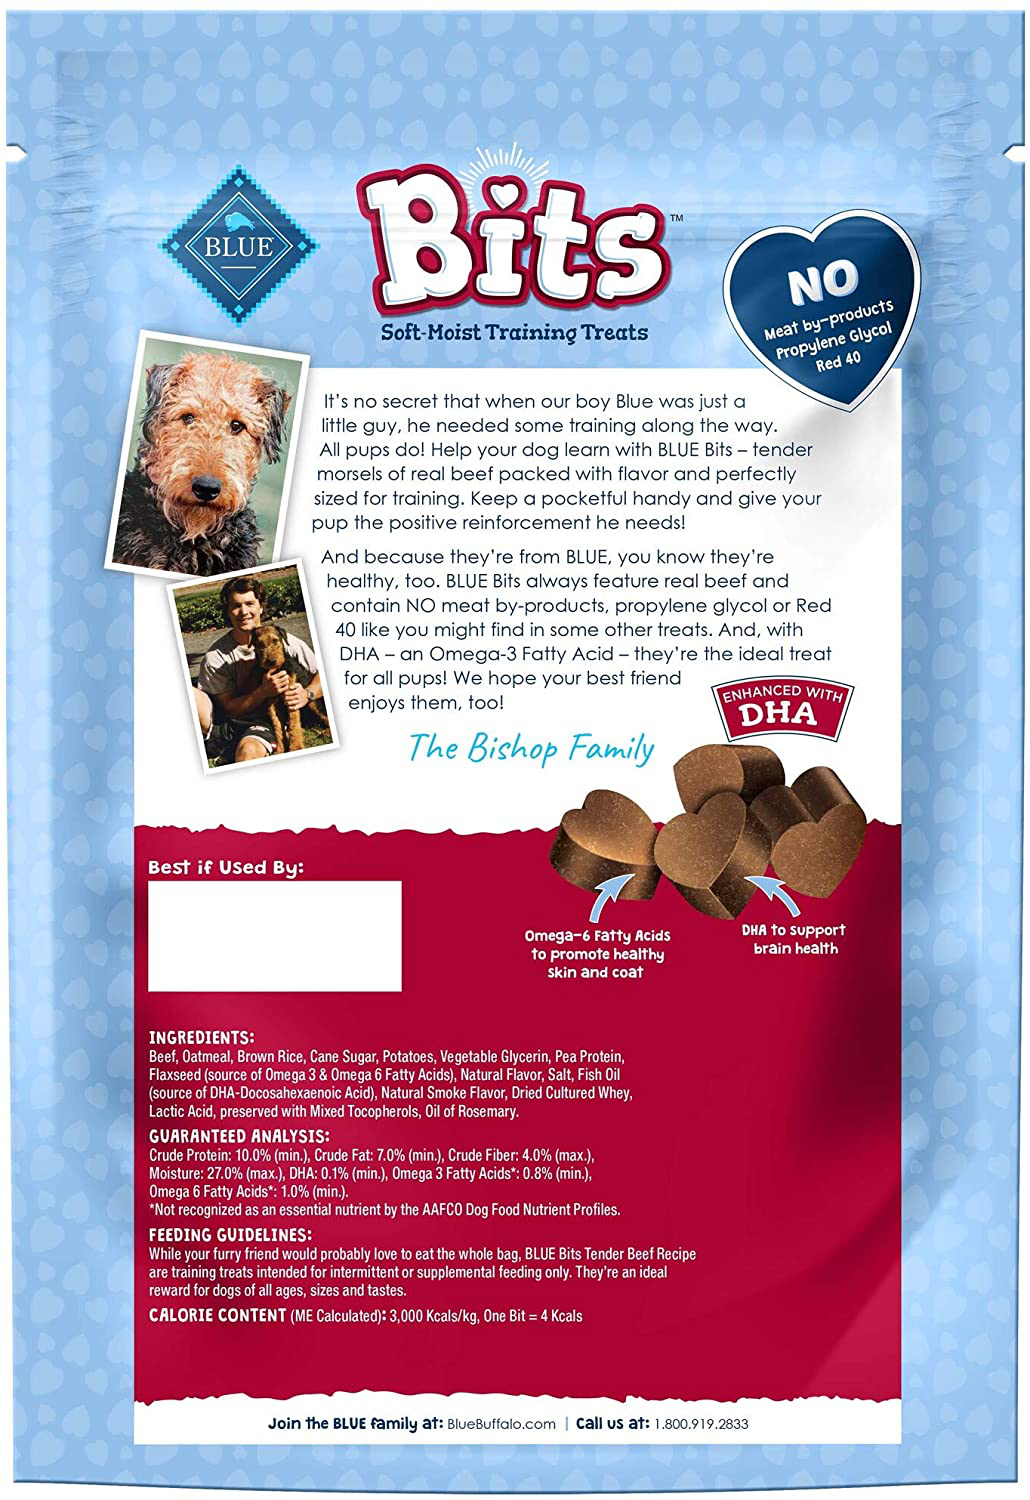 Blue Buffalo Blue Bits Natural Soft-Moist Training Dog Treats Animals & Pet Supplies > Pet Supplies > Dog Supplies > Dog Treats Blue Buffalo   